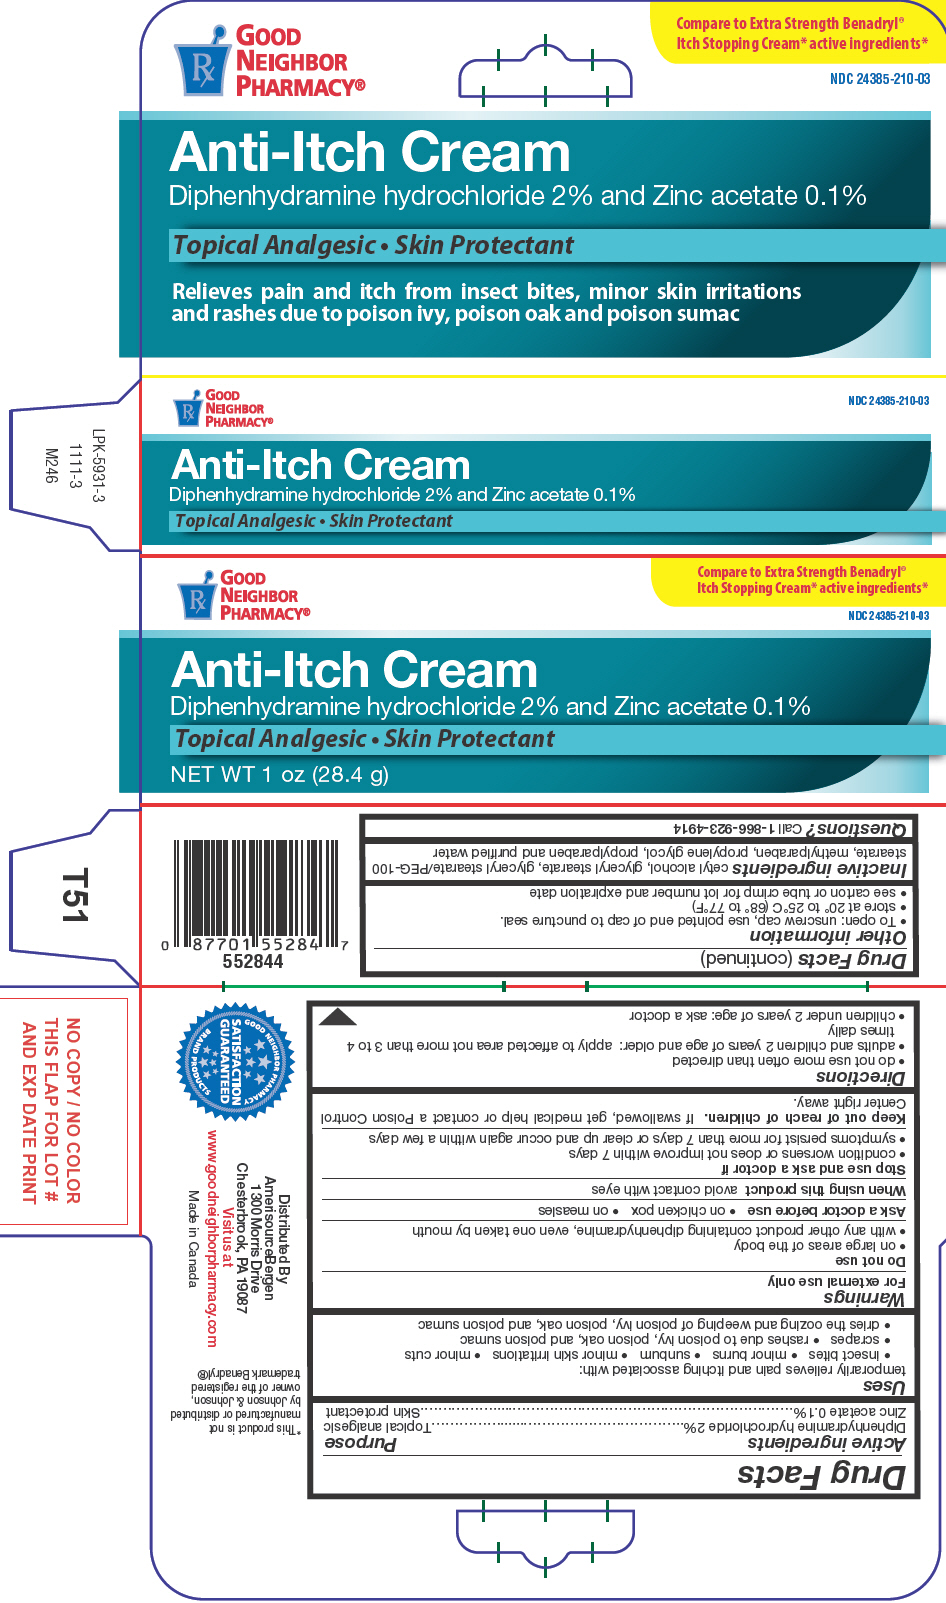 Anti-itch (Diphenhydramine Hydrochloride And Zinc Acetate) Cream [Amerisource Bergen]